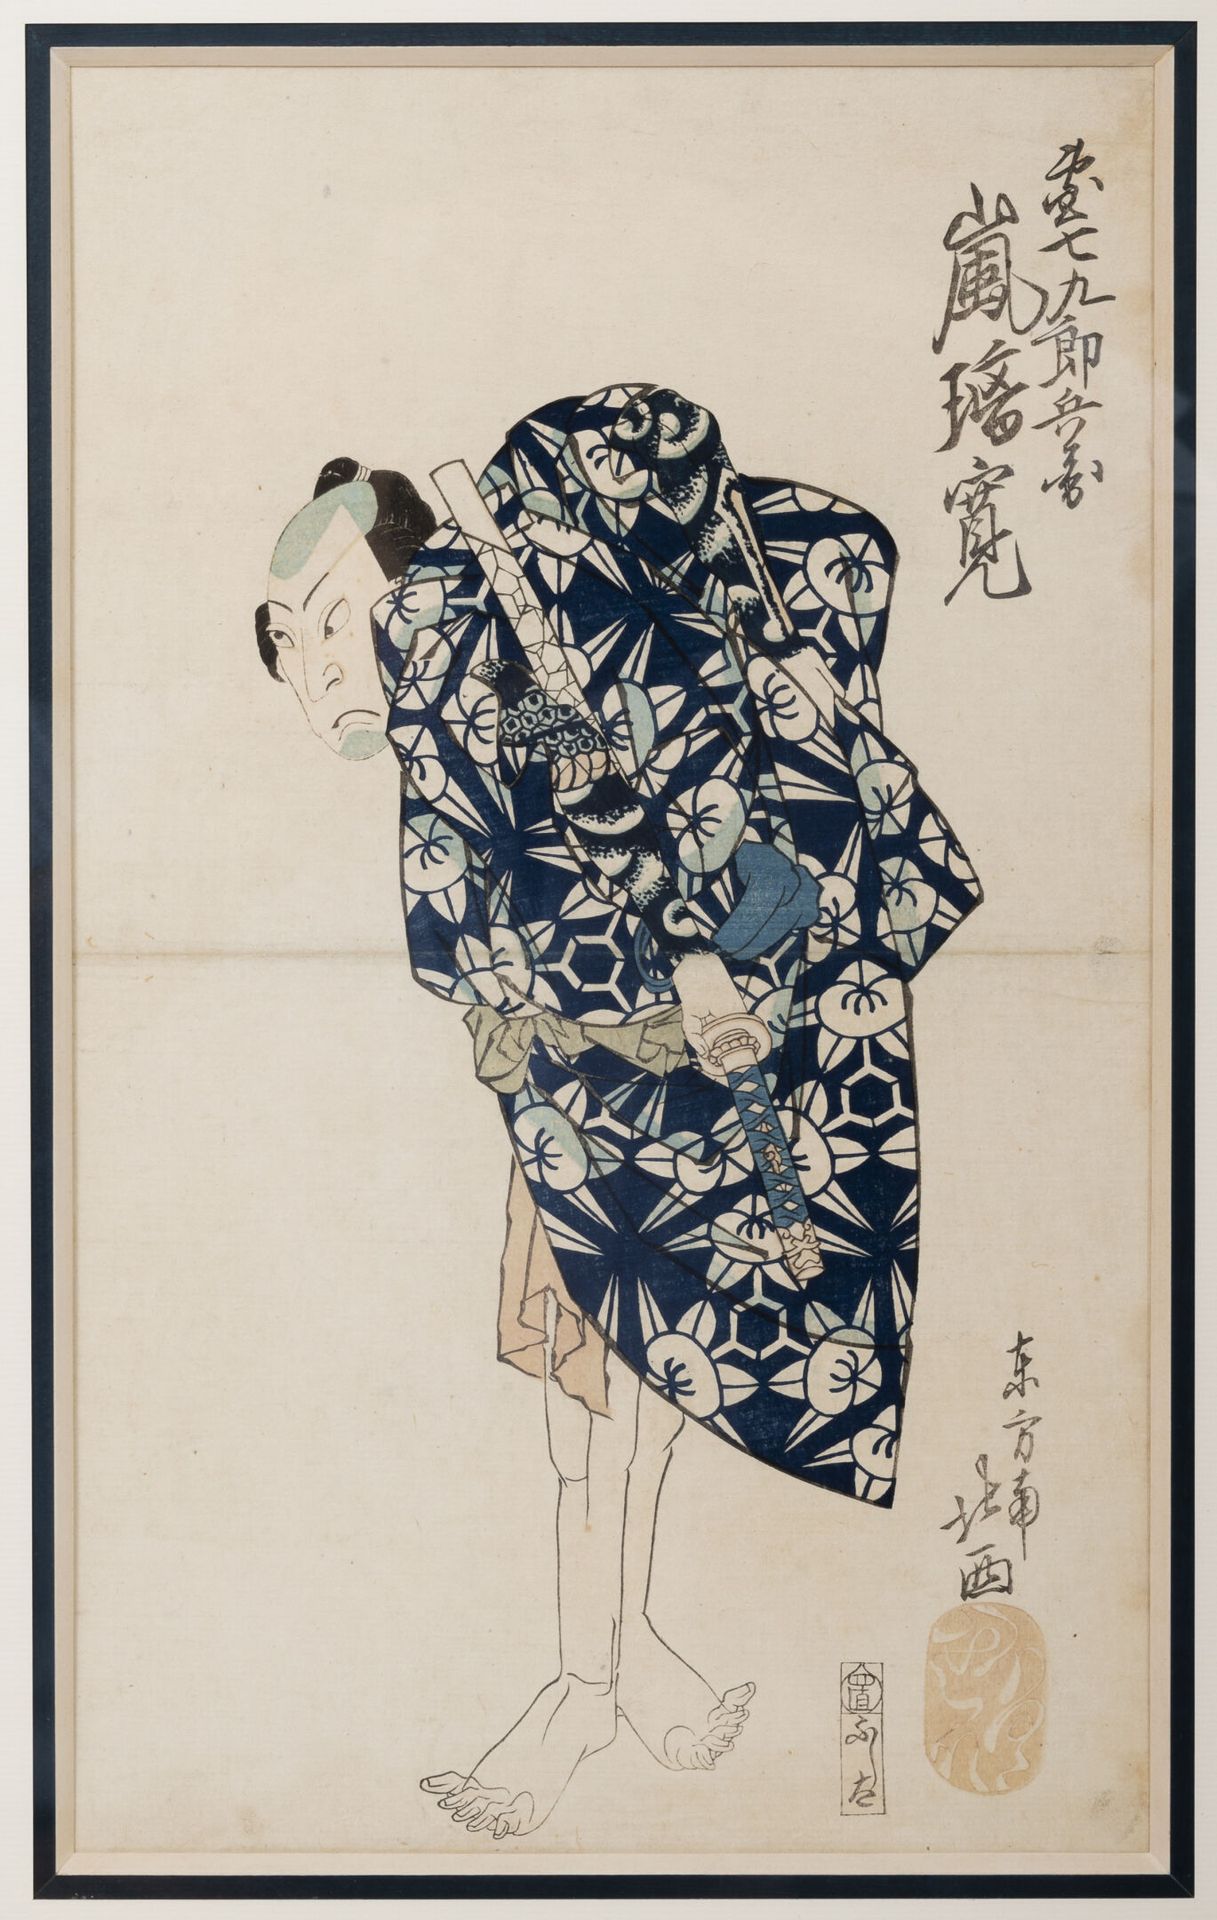 JAPON, XIXème siècle 演员打扮成武士，拿着一把剑，从后面看。

彩色打印。

35 x 21厘米。

褶皱和污渍。